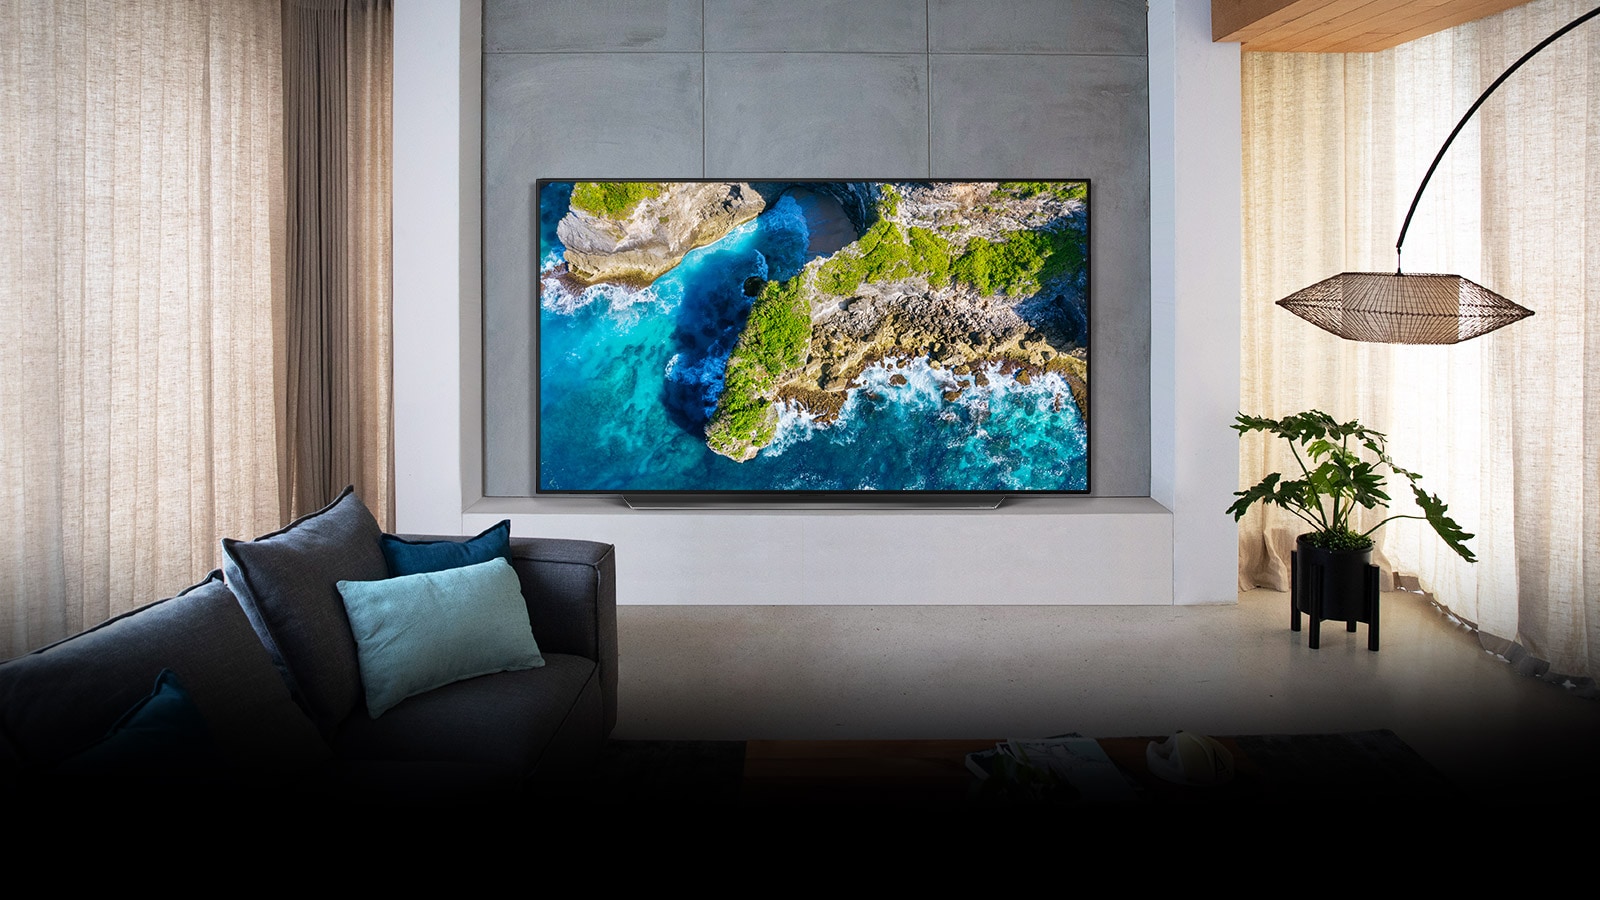 TV hiển thị hình ảnh thiên nhiên trên không trong khung cảnh ngôi nhà sang trọng